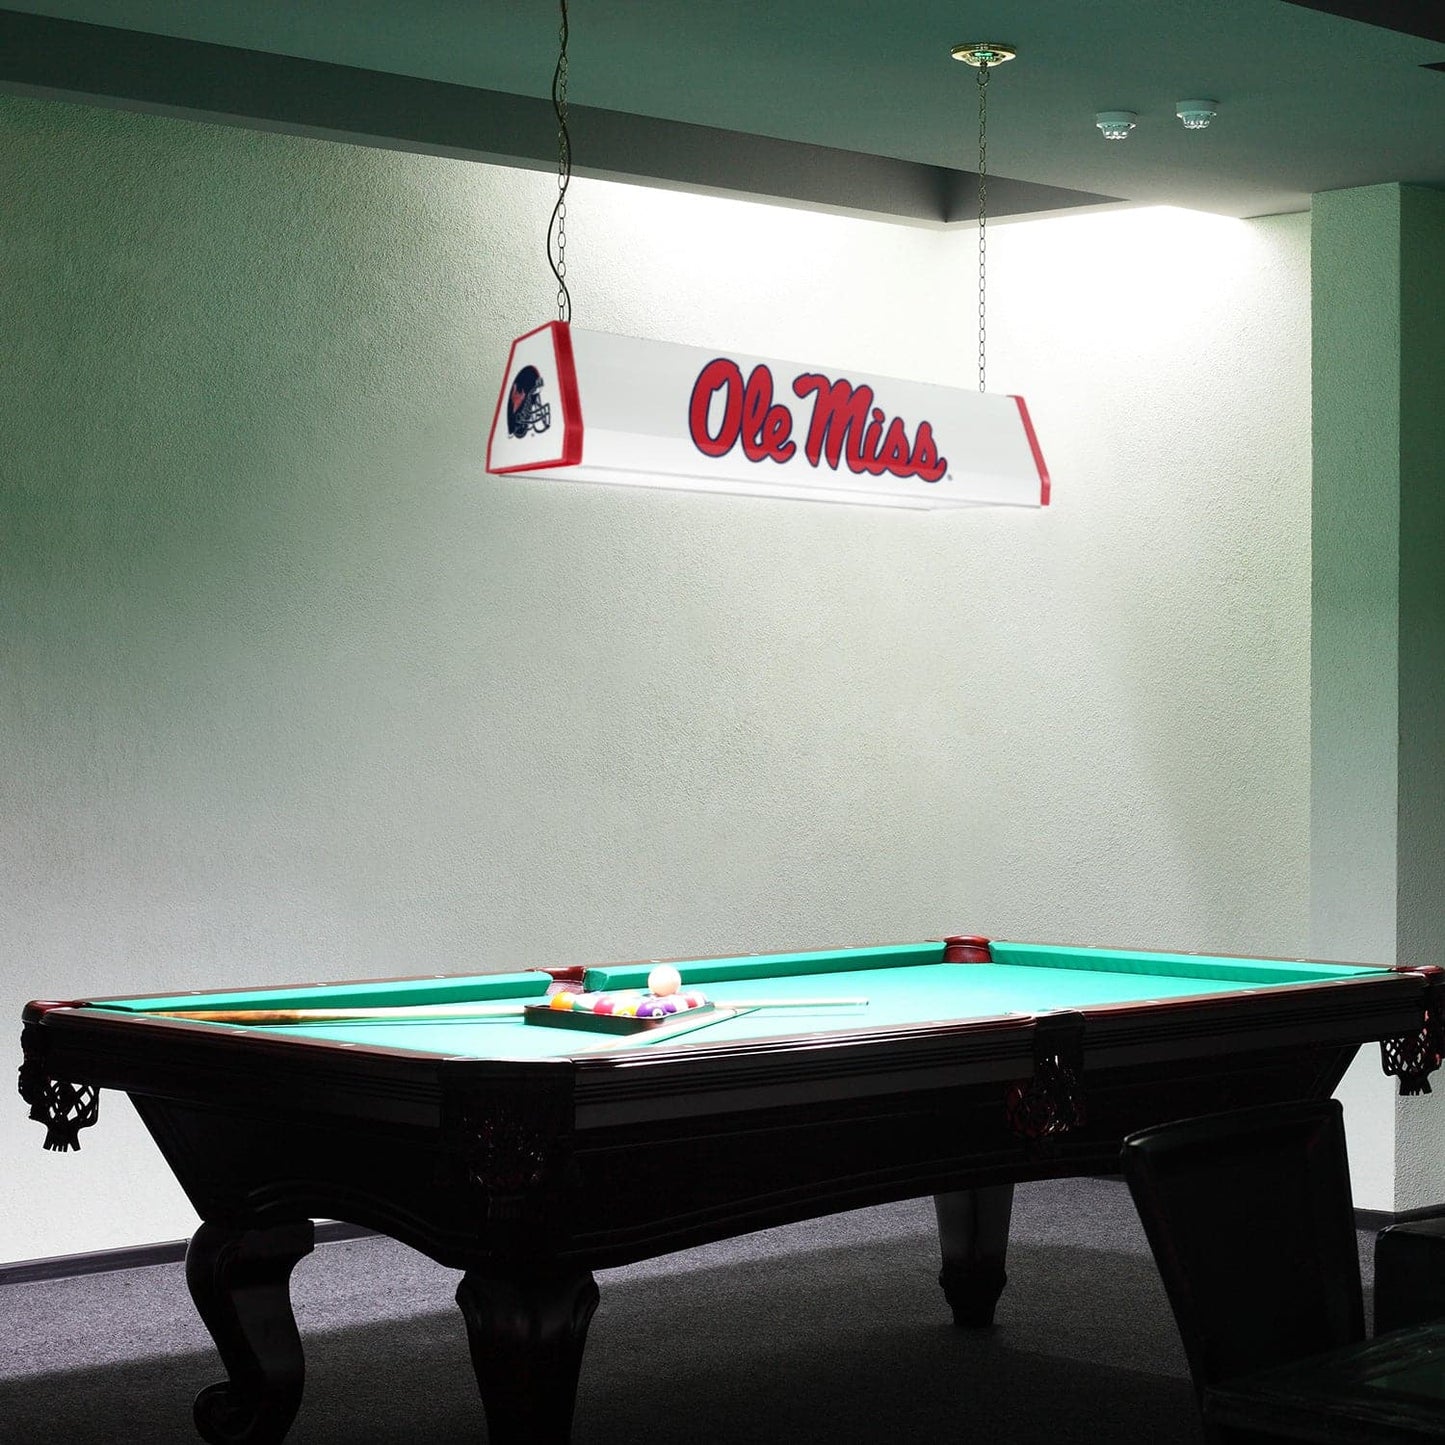 Ole Miss Rebels: Standard Pool Table Light - The Fan-Brand